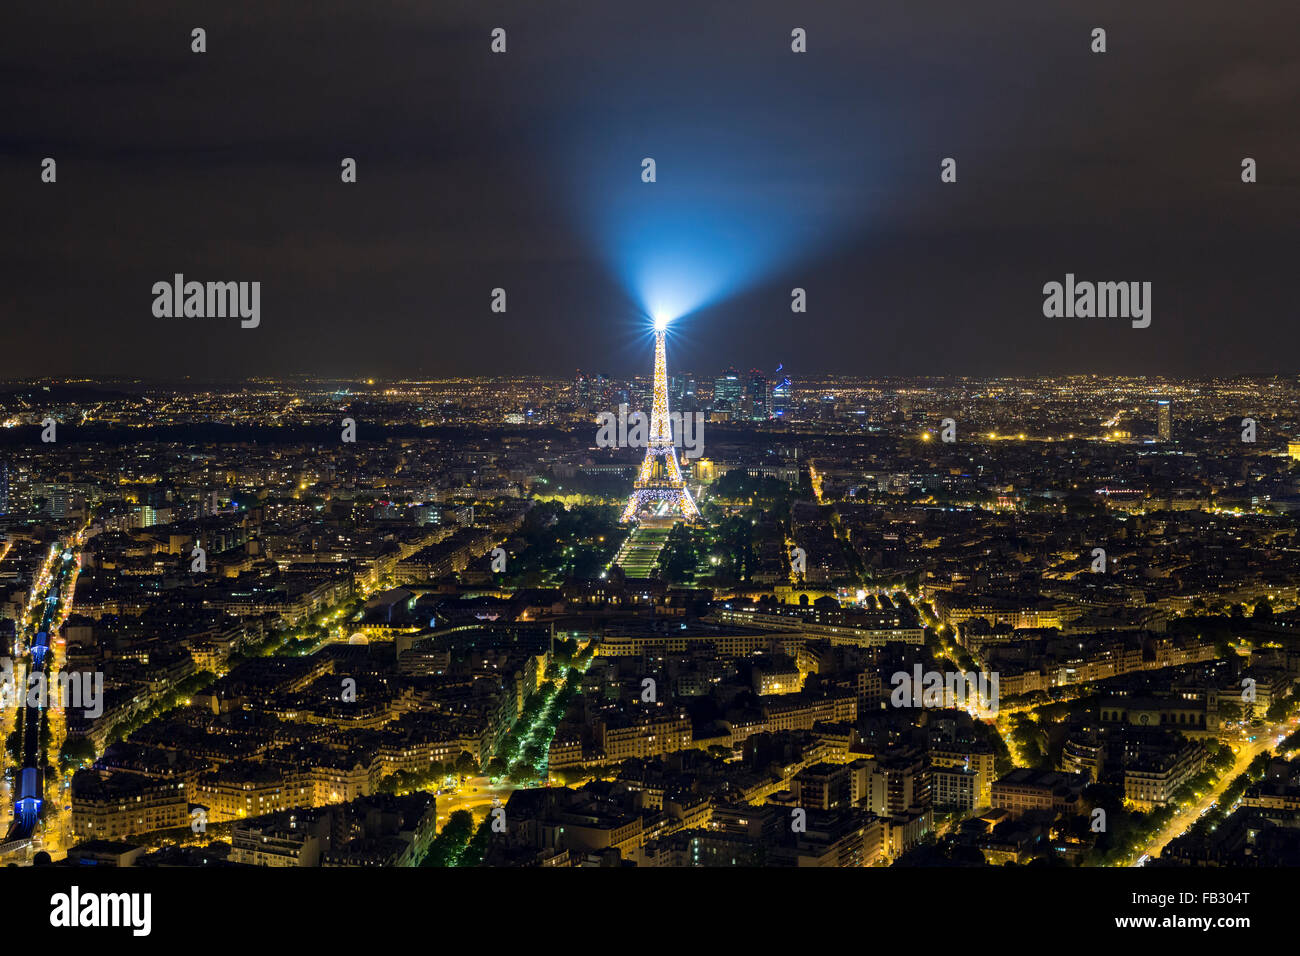 Erhöhten Blick auf die beleuchteten Eiffelturm, Nacht Skyline der Stadt und weit entfernten La Defence Wolkenkratzer, Paris, Frankreich, Europa Stockfoto